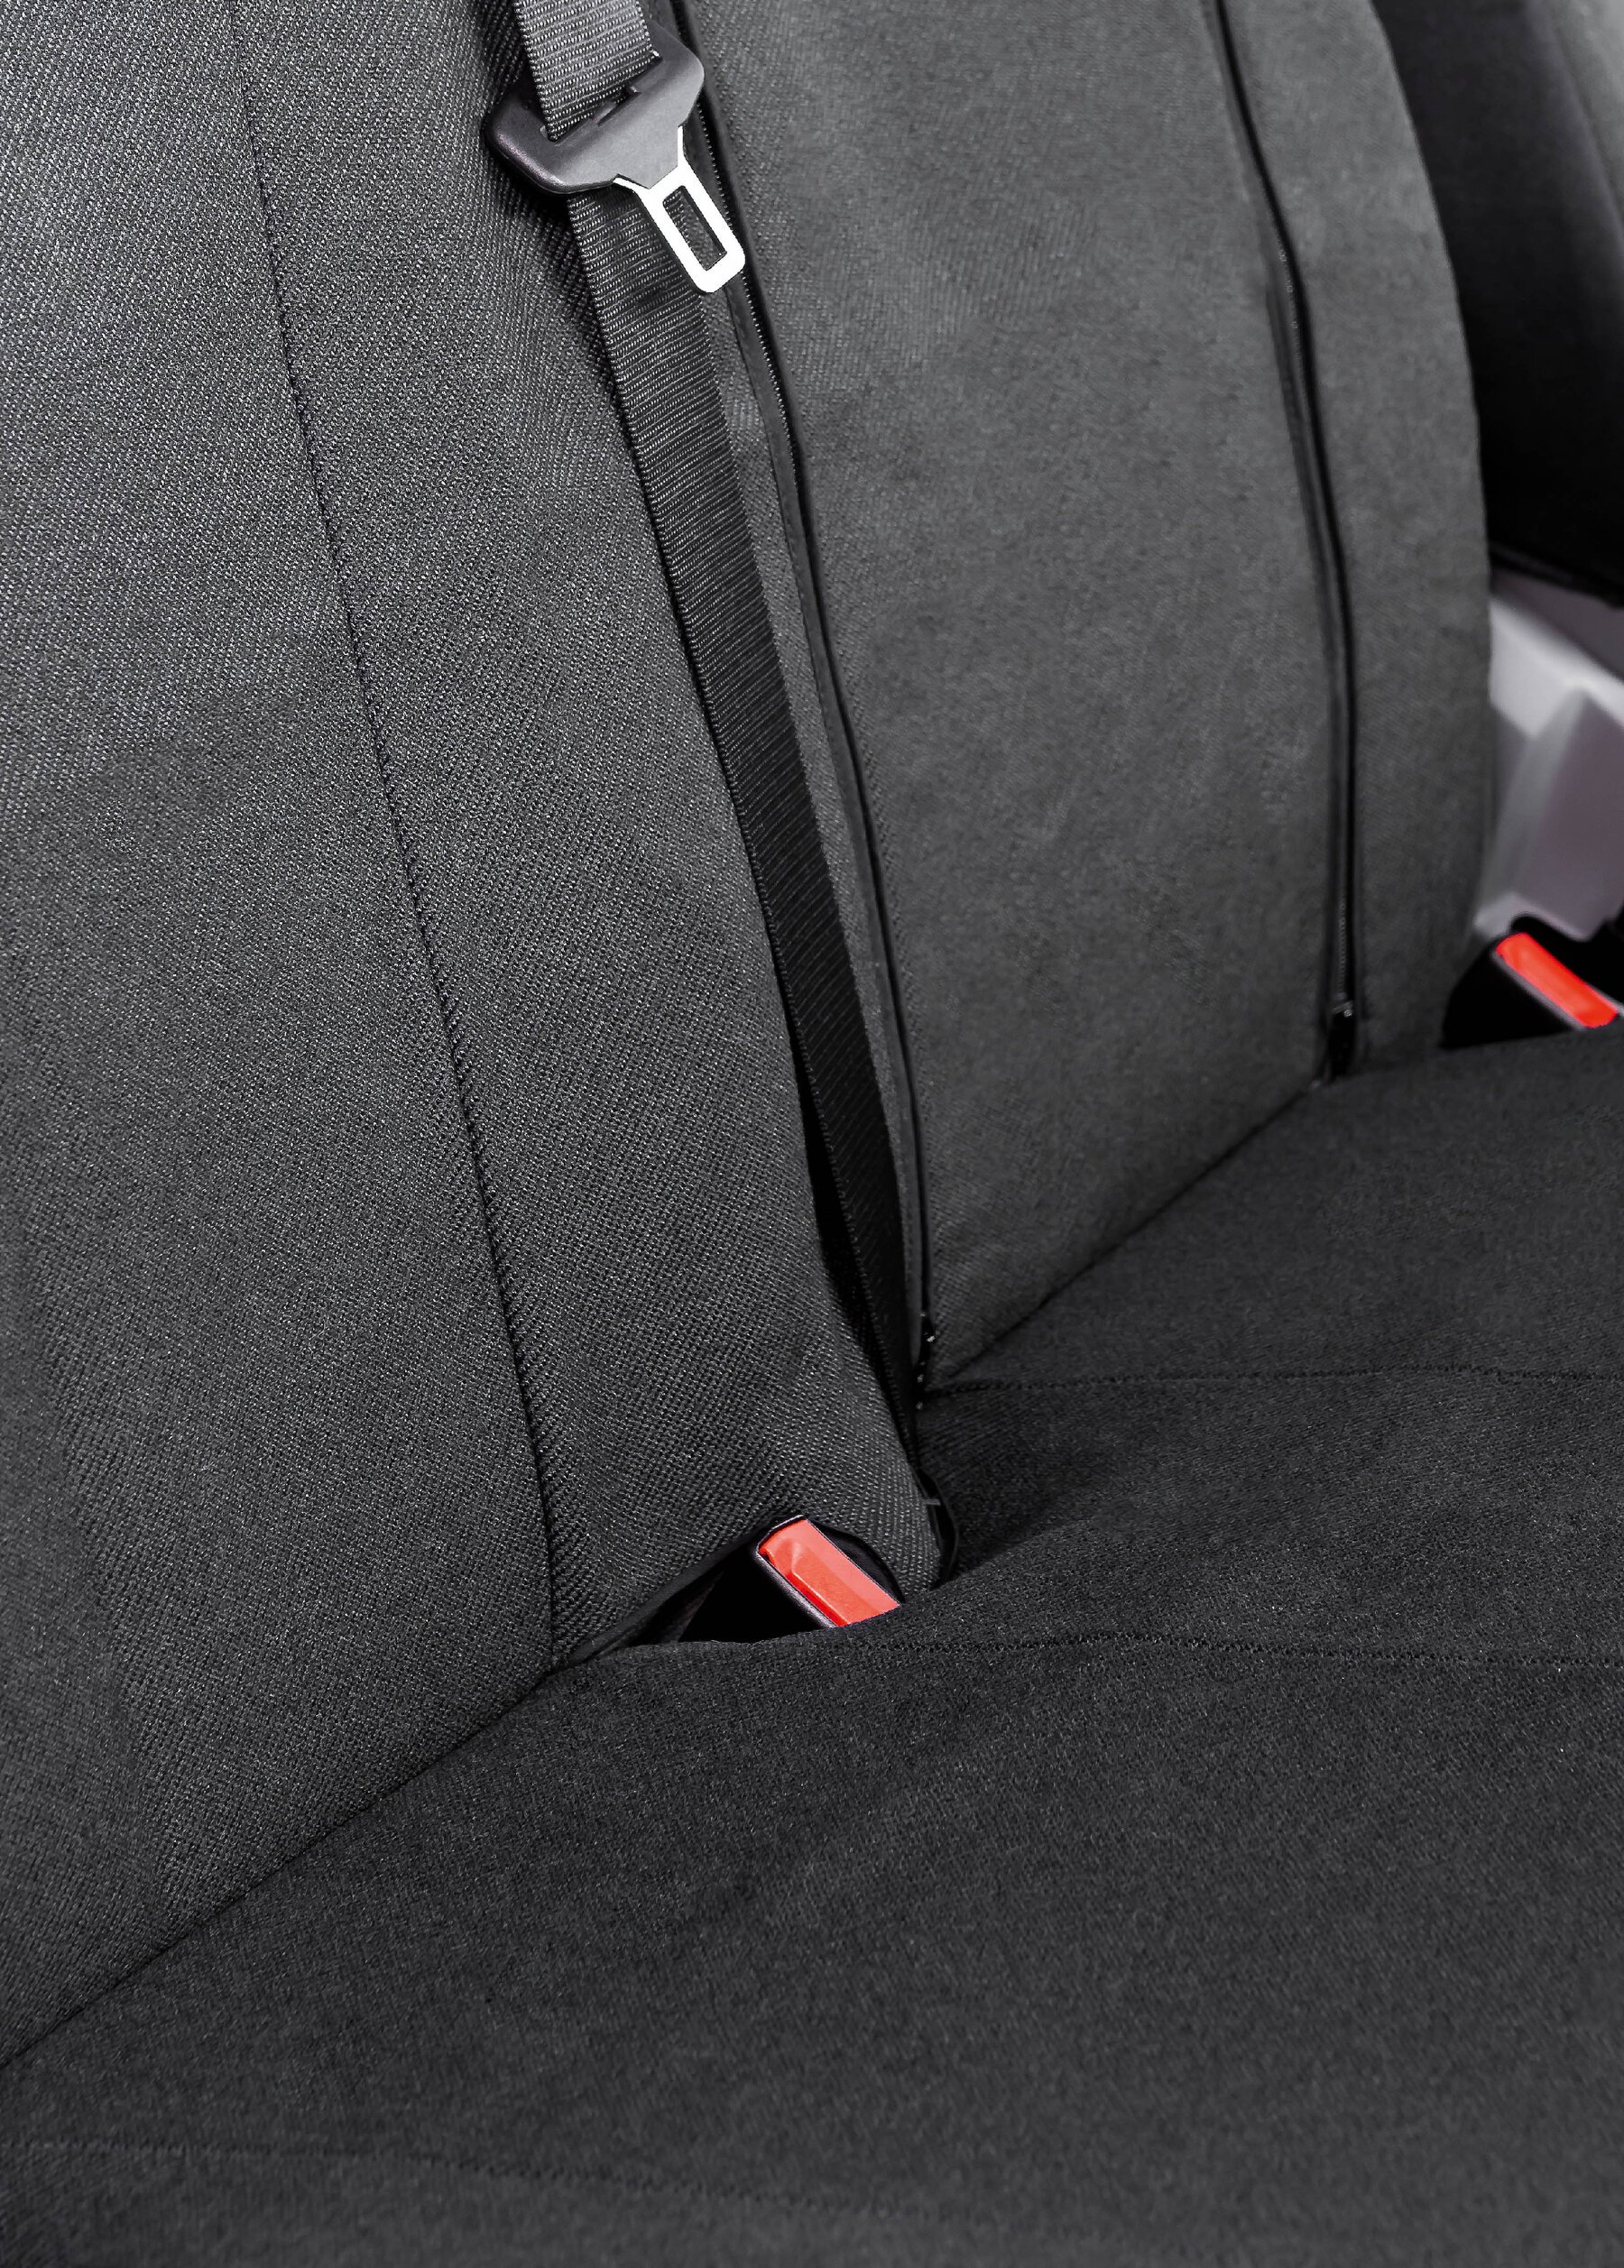 Transporter Coprisedili in tessuto per VW Crafter, Mercedes Sprinter, sedile singolo e doppio